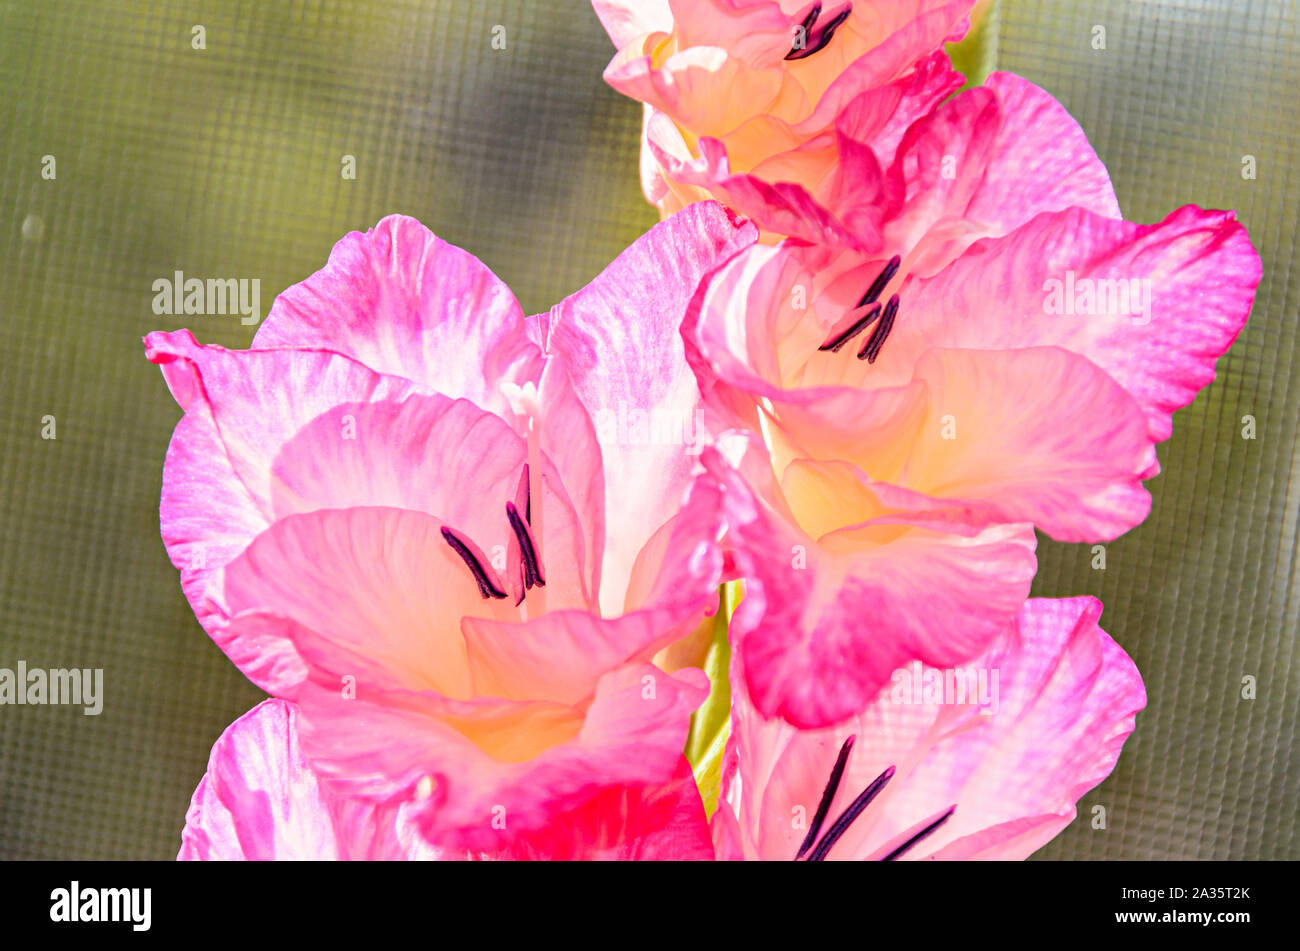 Orange Gladiolus imbricatus flower, close up. Stock Photo